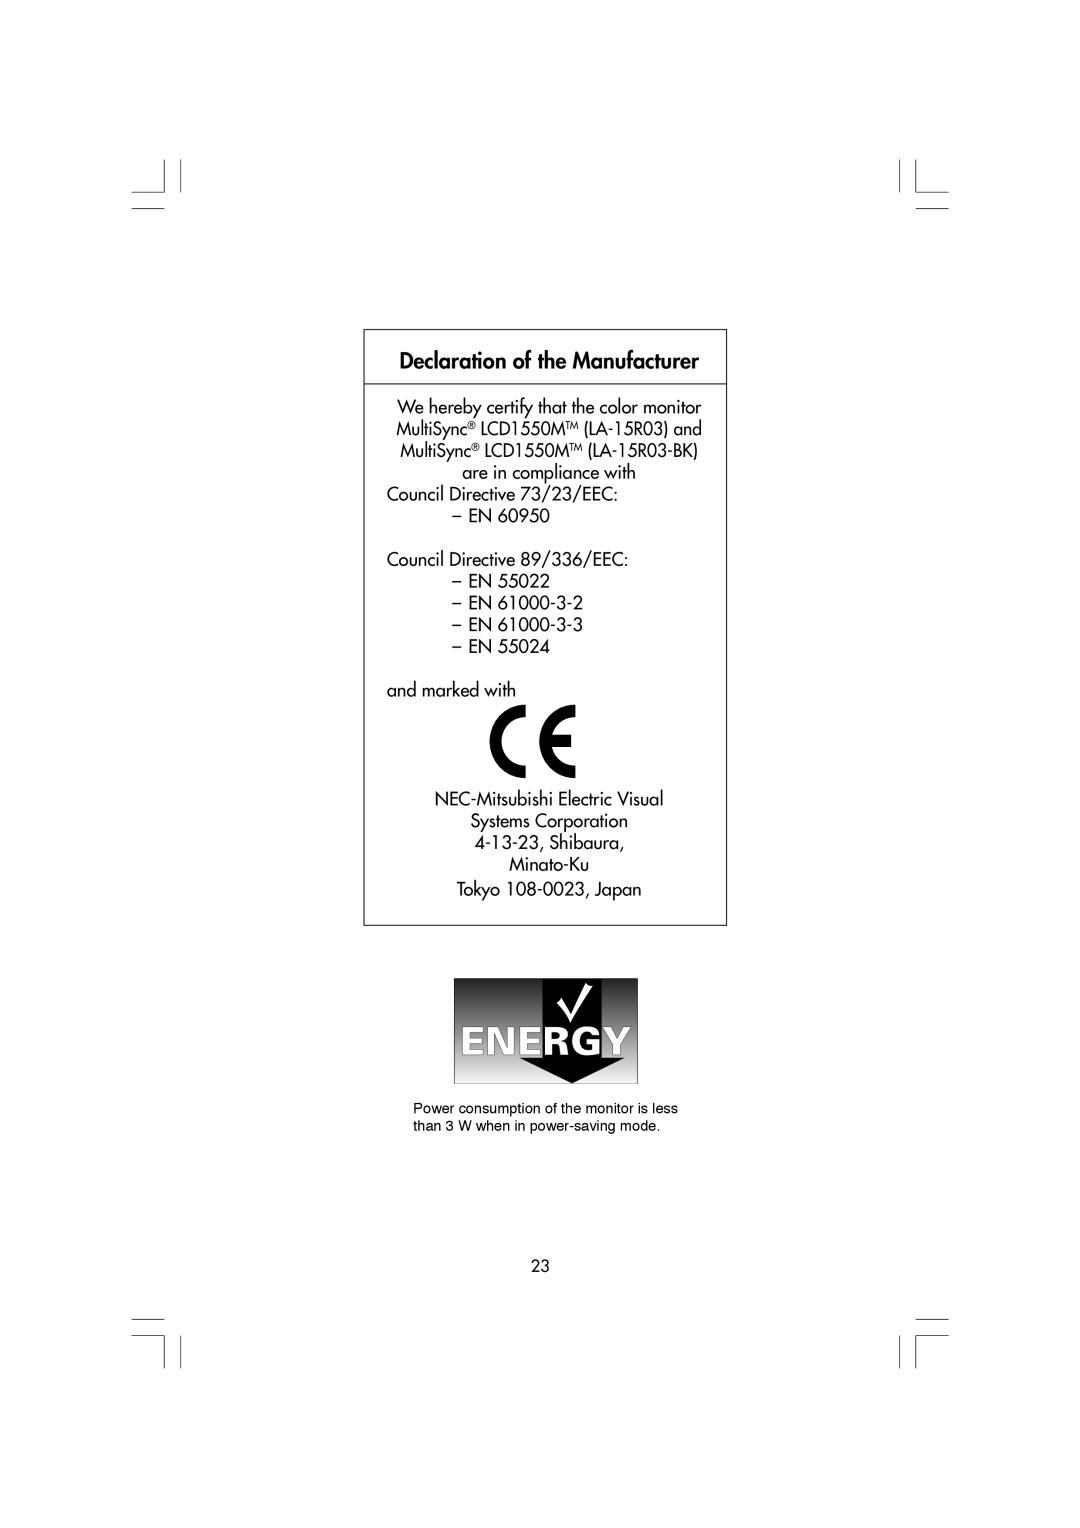 NEC LA-15R03-BK manual Declaration of the Manufacturer, Council Directive 73/23/EEC Ð EN Council Directive 89/336/EEC Ð EN 